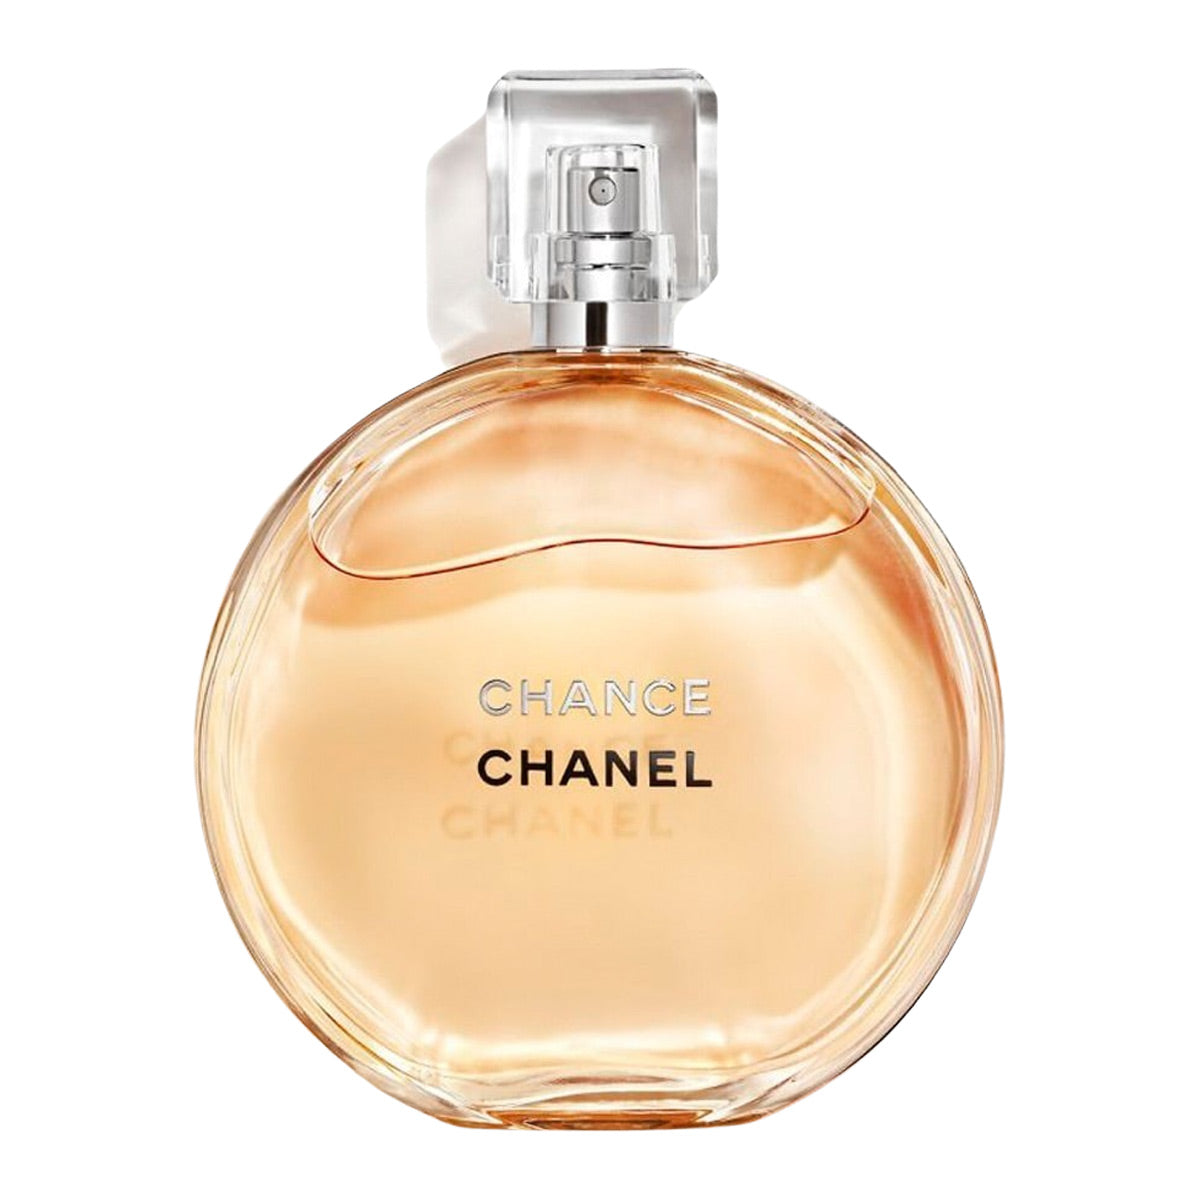 Chanel Chance Eau de Toilette 3.4 oz / 100 ml